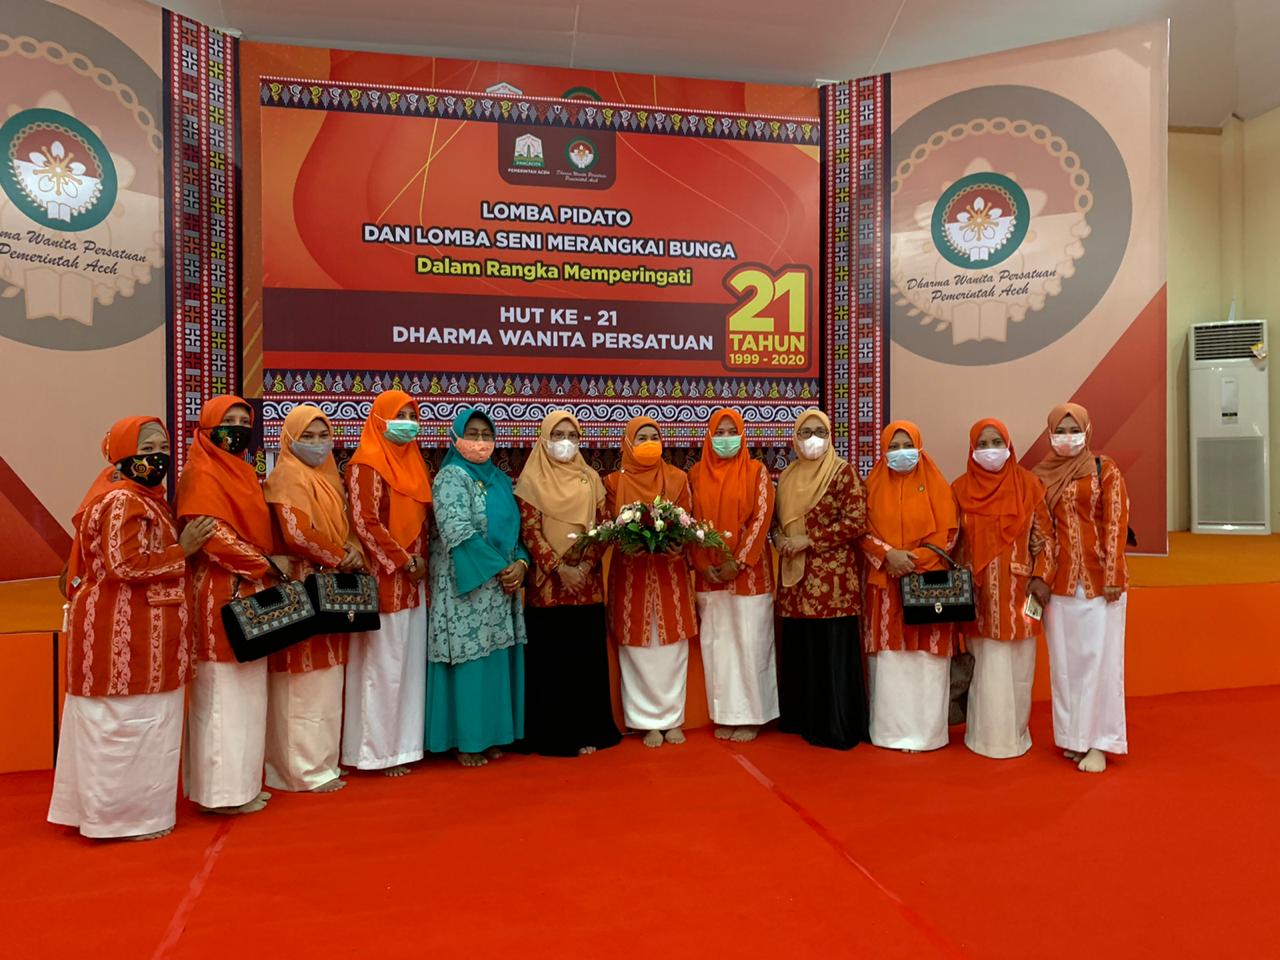 Anggota DWP Kabupaten Aceh Tengah turut ikut serta dalam rangkaian kegiatan peringatan HUT Dharma Wanita Persatuan yang ke-21 Tahun 2020 tingkat Provinsi Aceh, yang digelar pengurus Dharma Wanita Persatuan (DWP) Aceh, diantaranya lomba merangkai bunga,  Kegiatan Donor Darah bagi anggota DWP Kabupaten/Kota, serta seremonial acara puncak peringatan HUT DWP ke-21 Tahun 2020, bertempat di Aula gedung DWP Aceh Jl.Stadion Dimurtala Lampineung, Banda Aceh, Kamis (10/12/2020). 